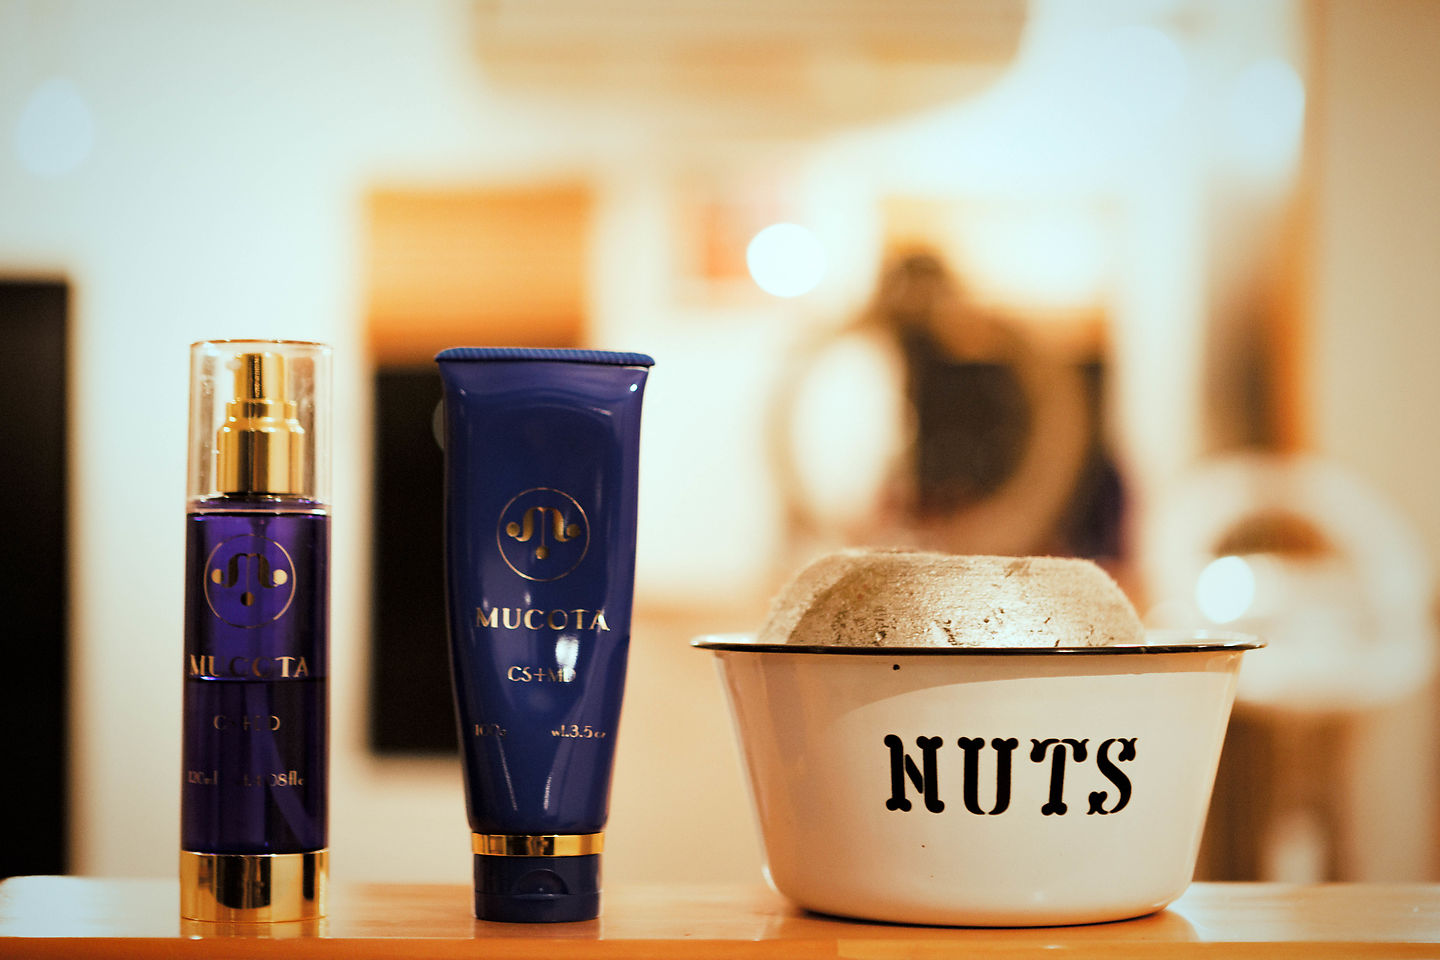 “NUTS” the beauty salon